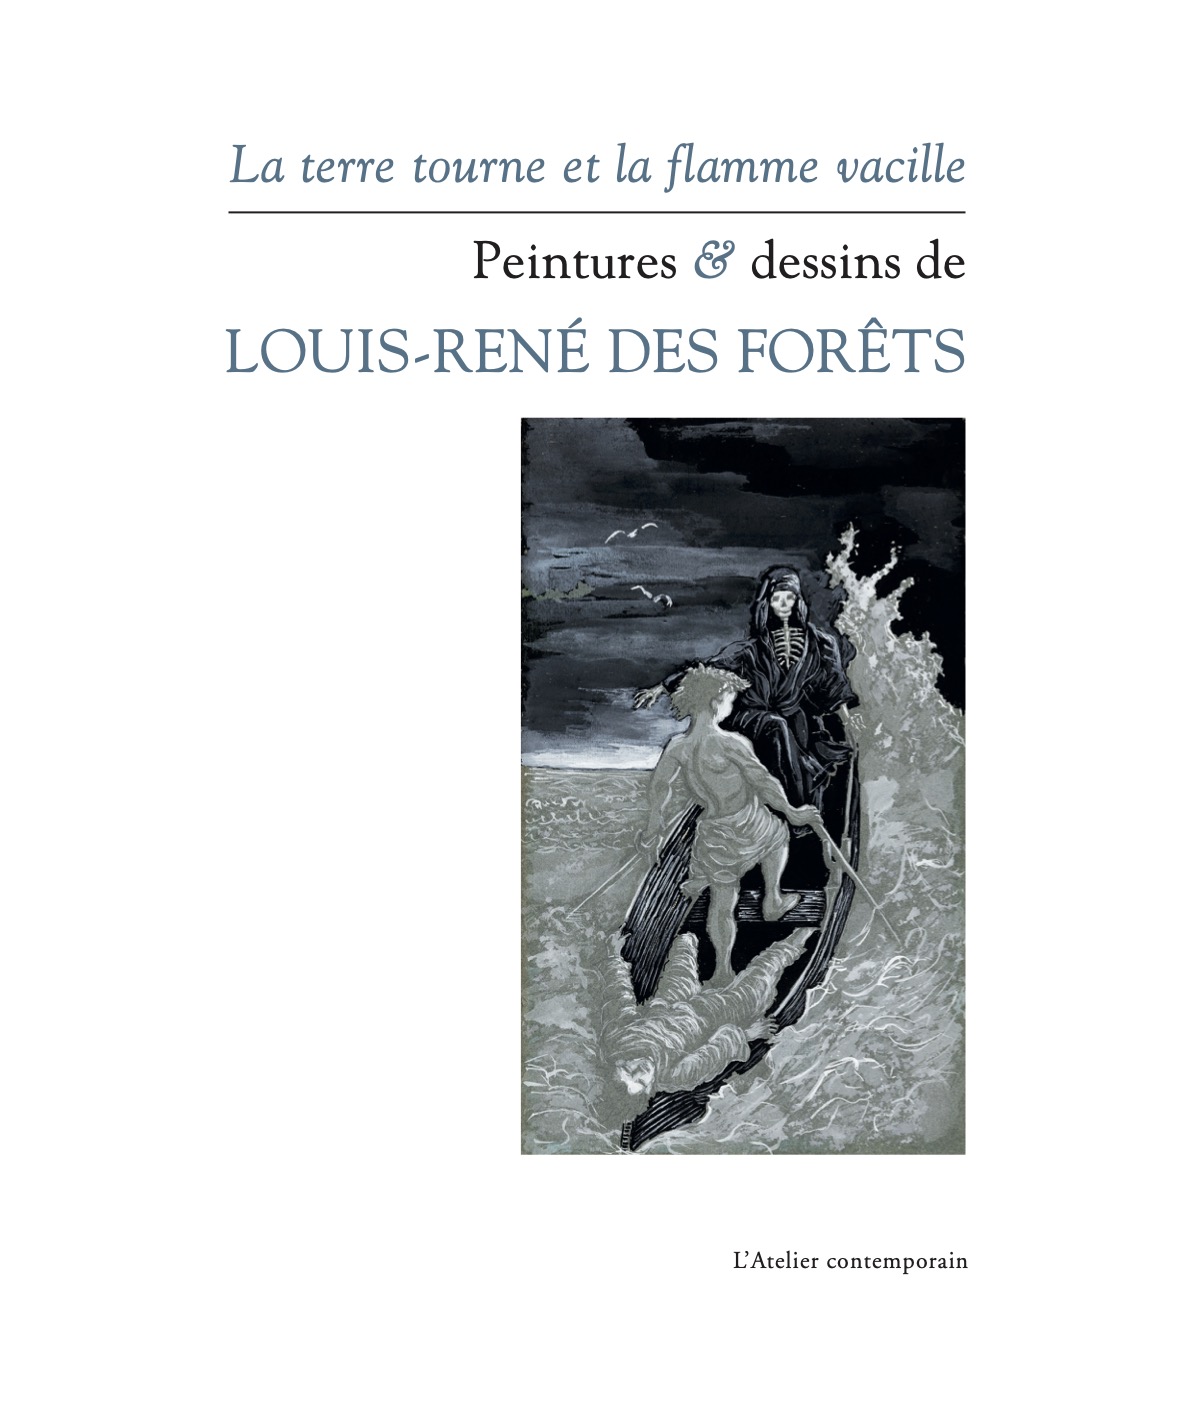 O tagarela - Forêts, Louis-René - Carambaia